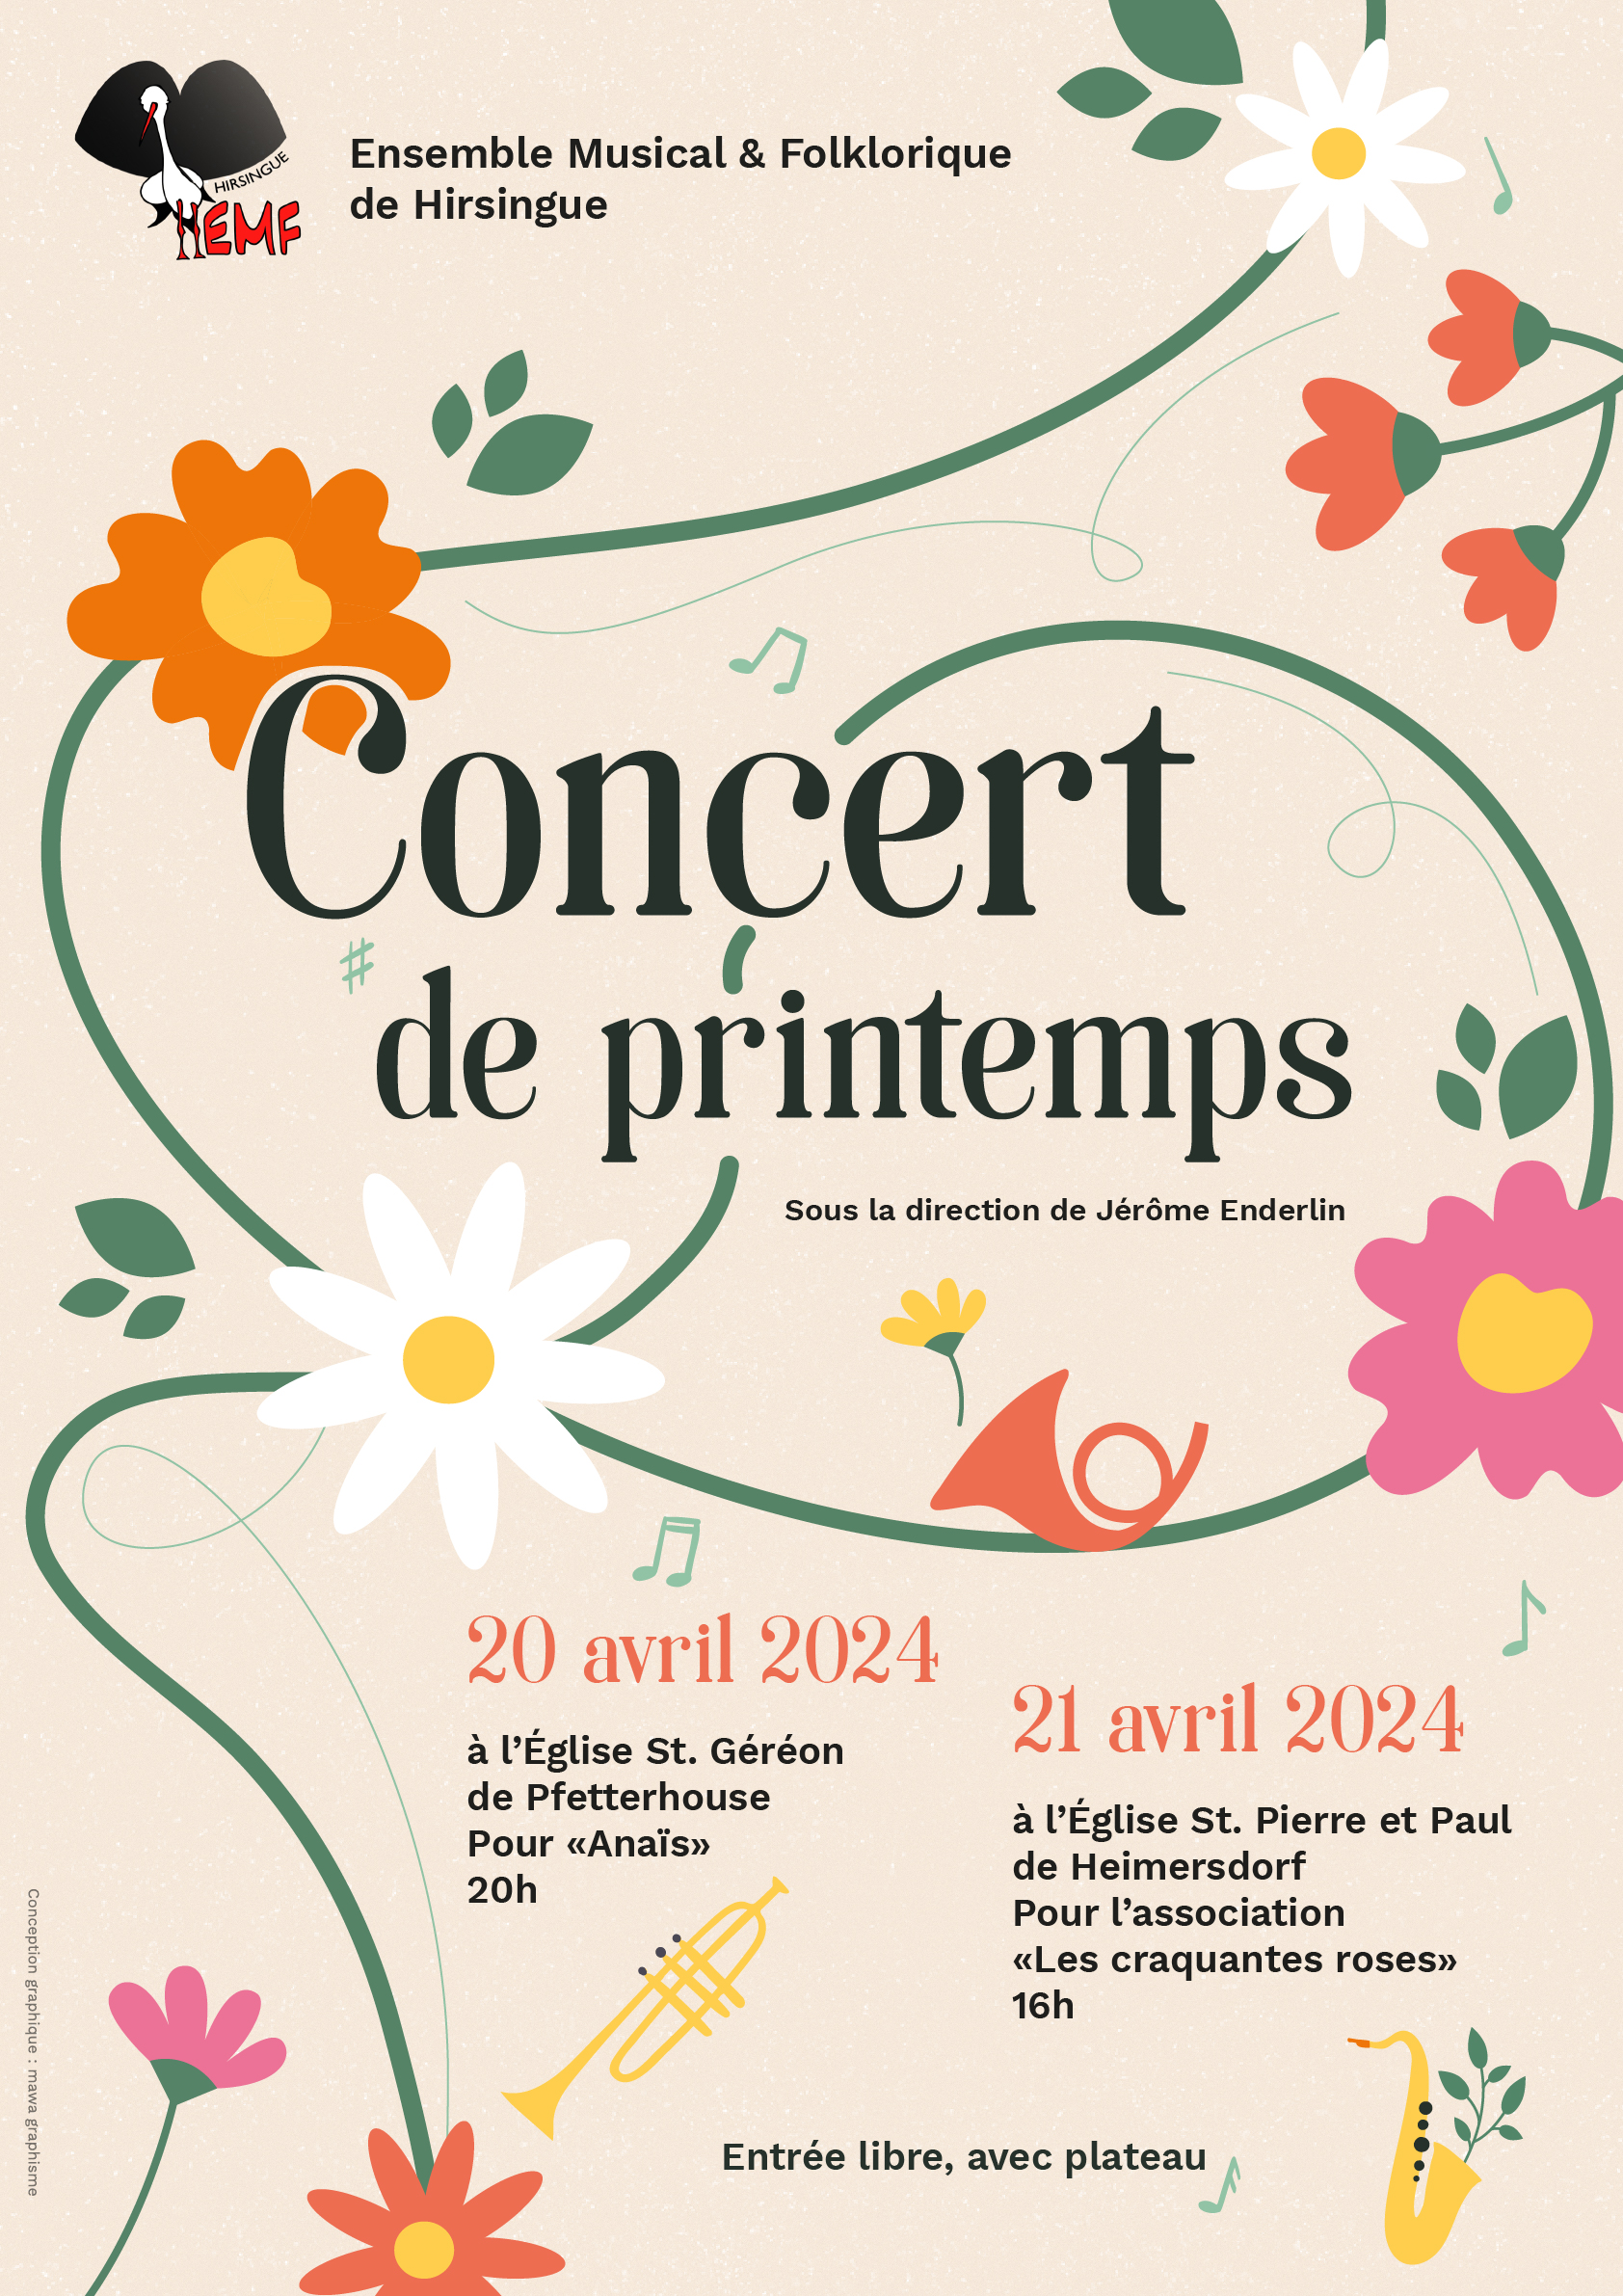 Concert de printemps de l’EMF Dimanche 21 avril à 16h- Eglise Sts Pierre et Paul